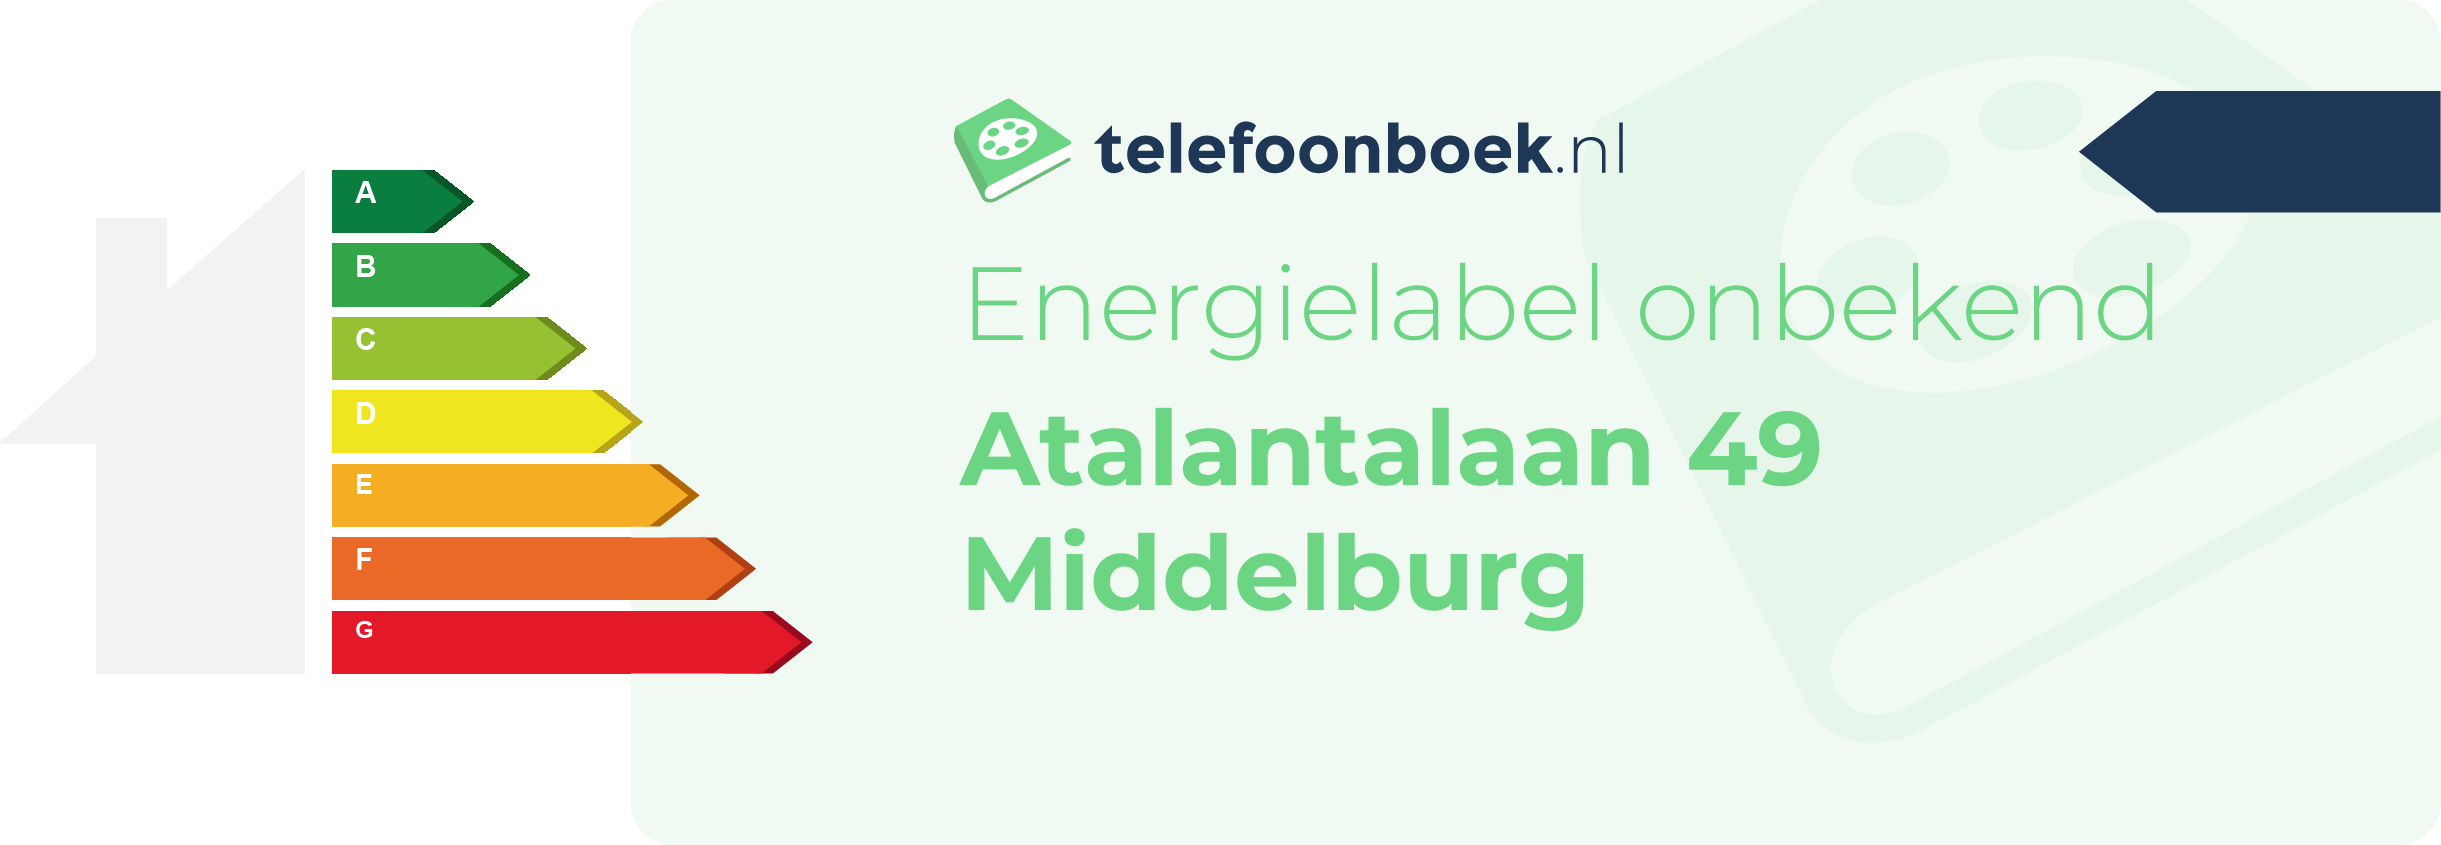 Energielabel Atalantalaan 49 Middelburg